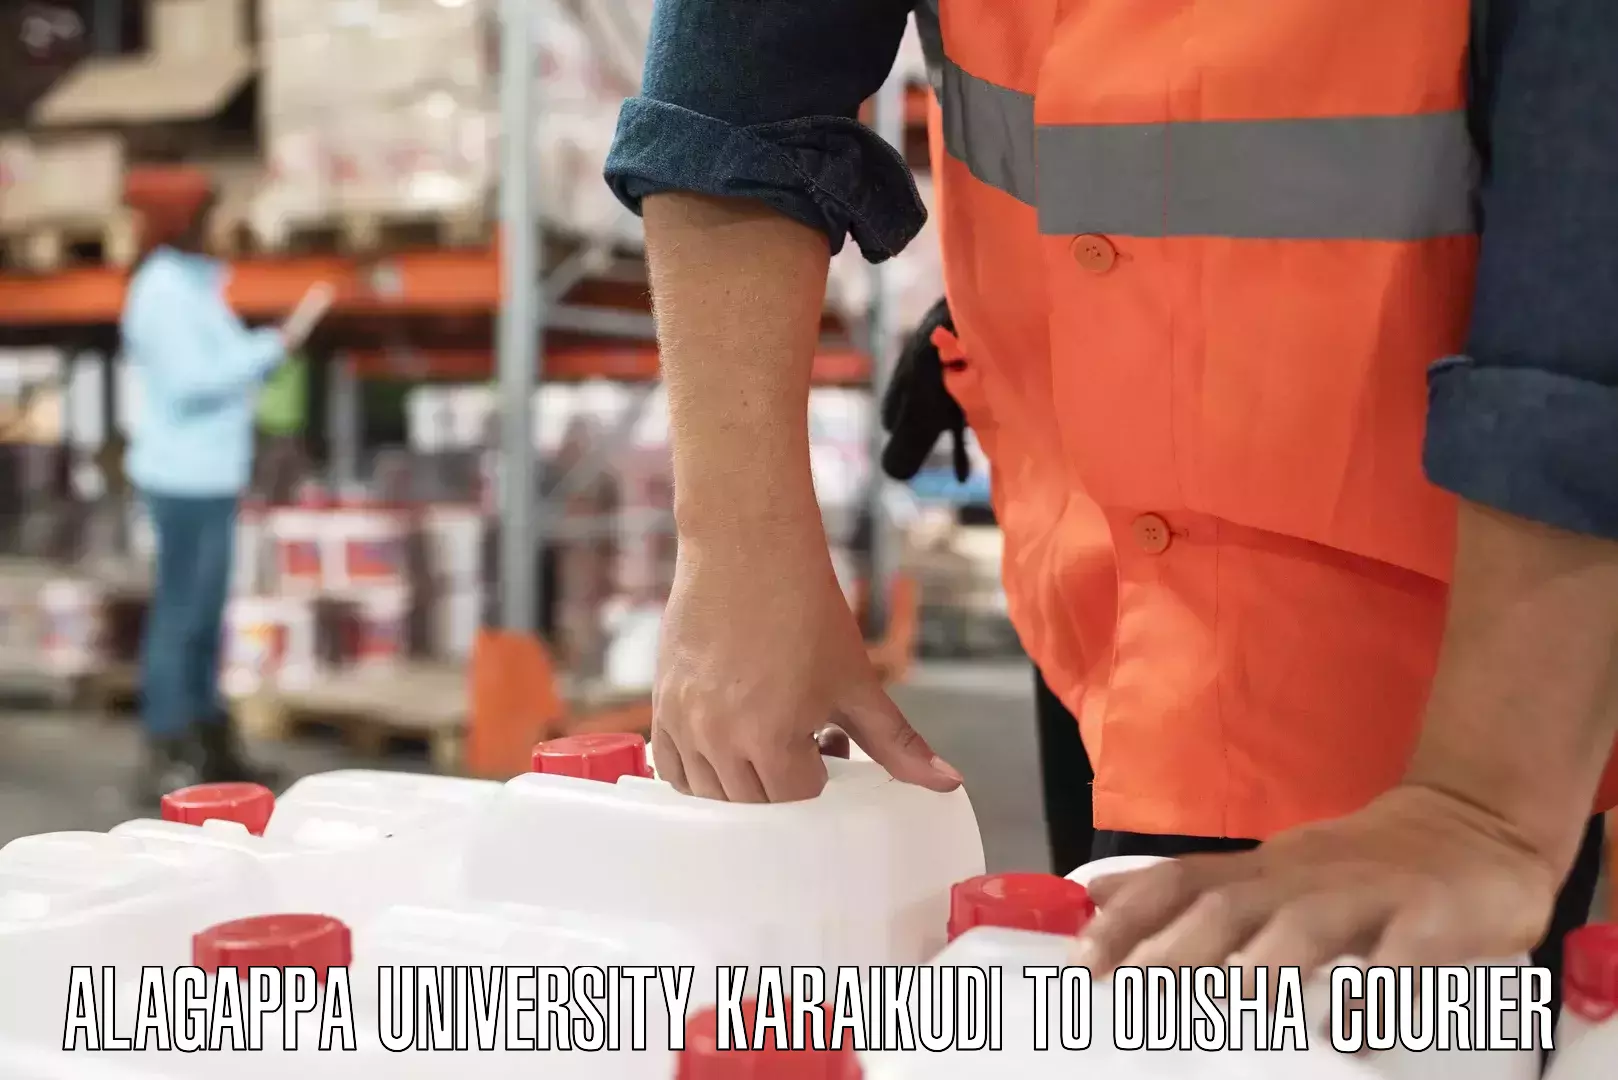 Efficient cargo handling Alagappa University Karaikudi to Komana